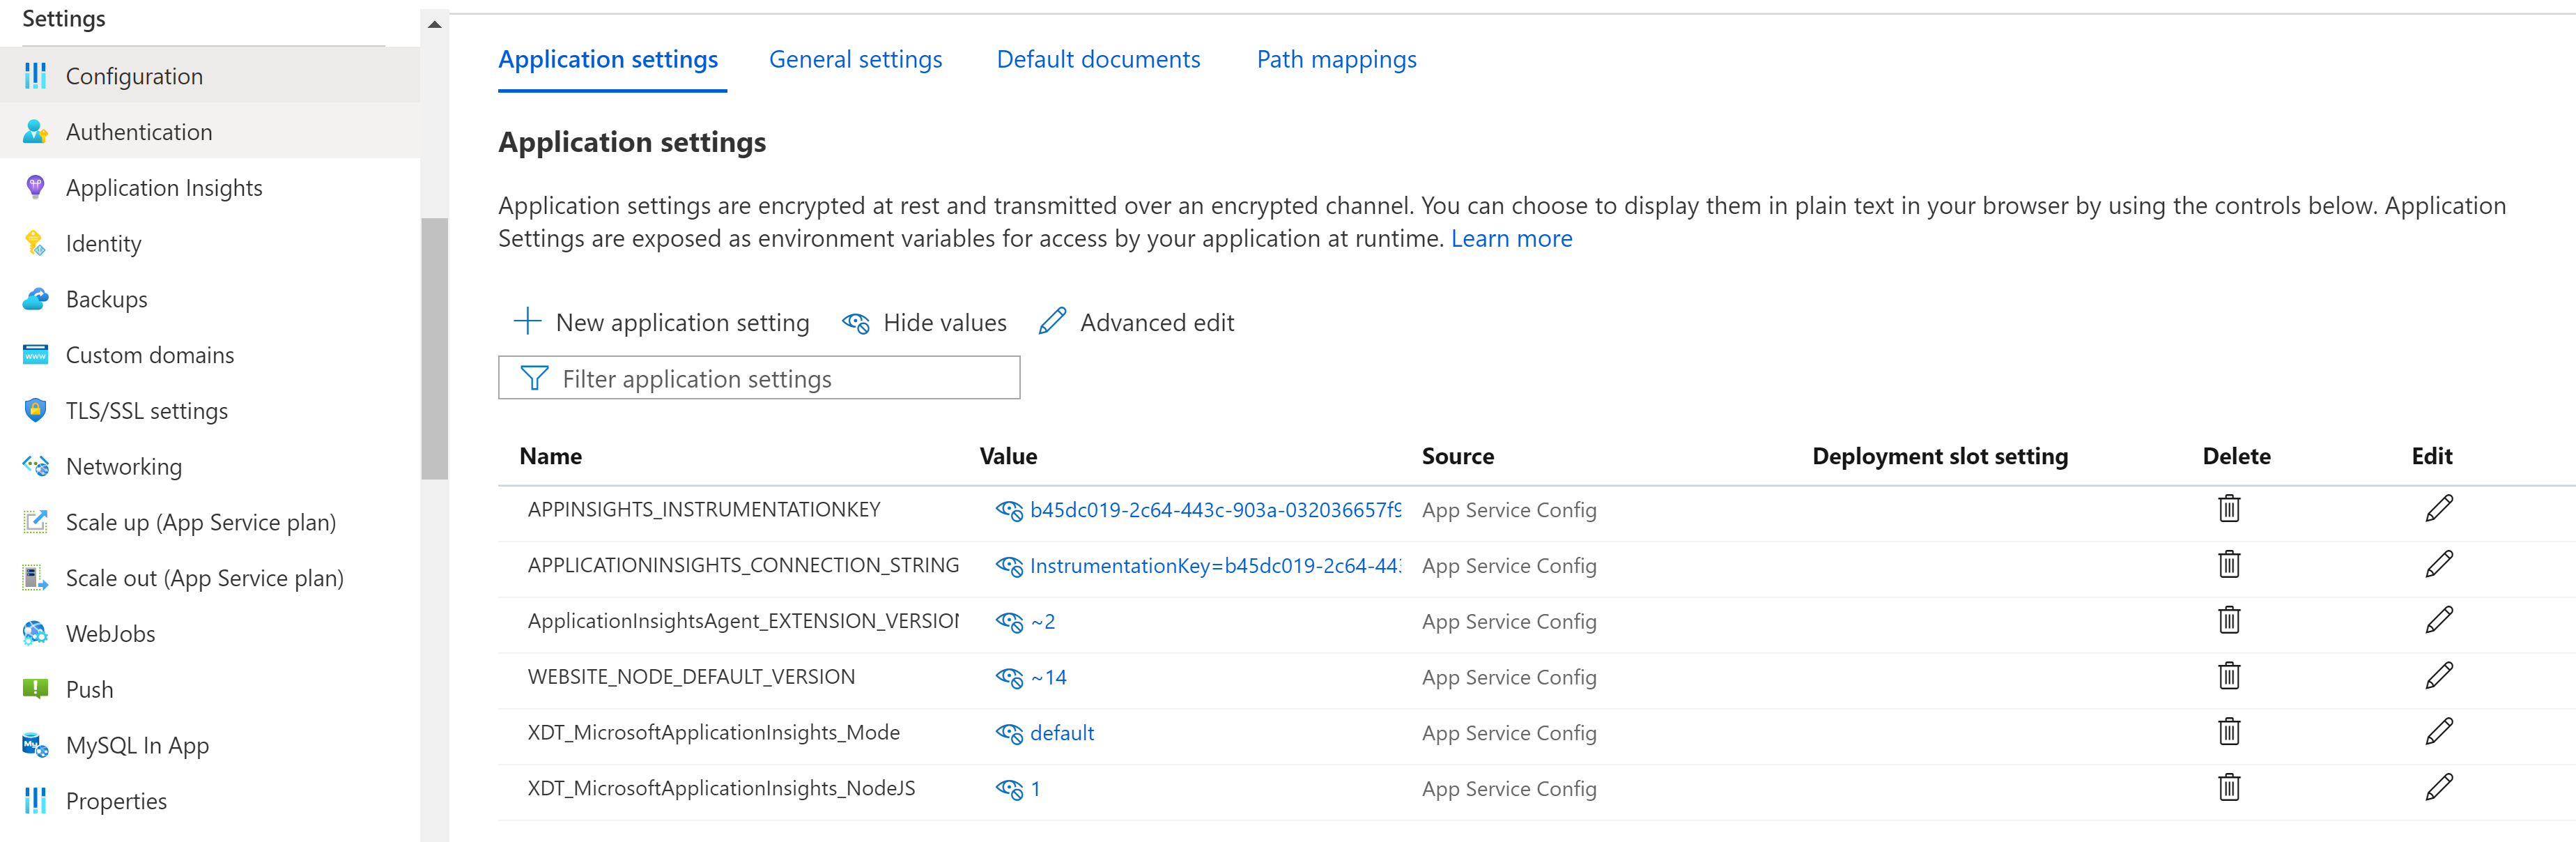 Captura de tela das Configurações do Aplicativo do Serviço de Aplicativo com as configurações disponíveis do Application Insights.